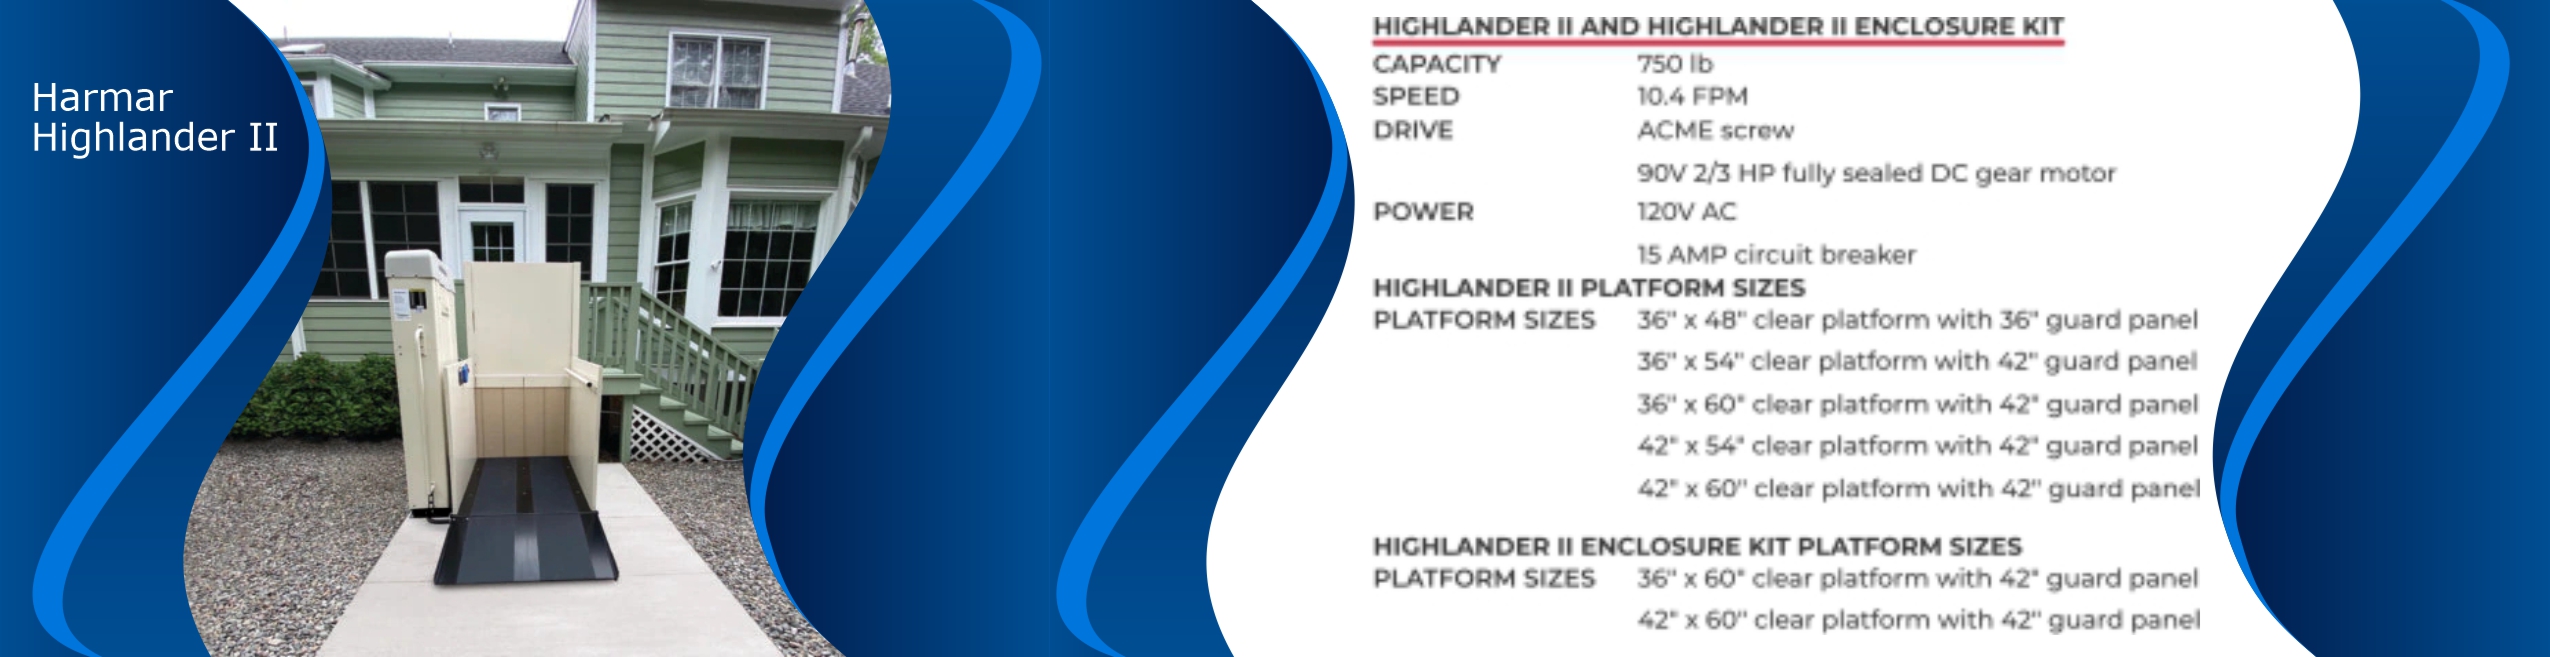 Harmar Highlander II Specifications